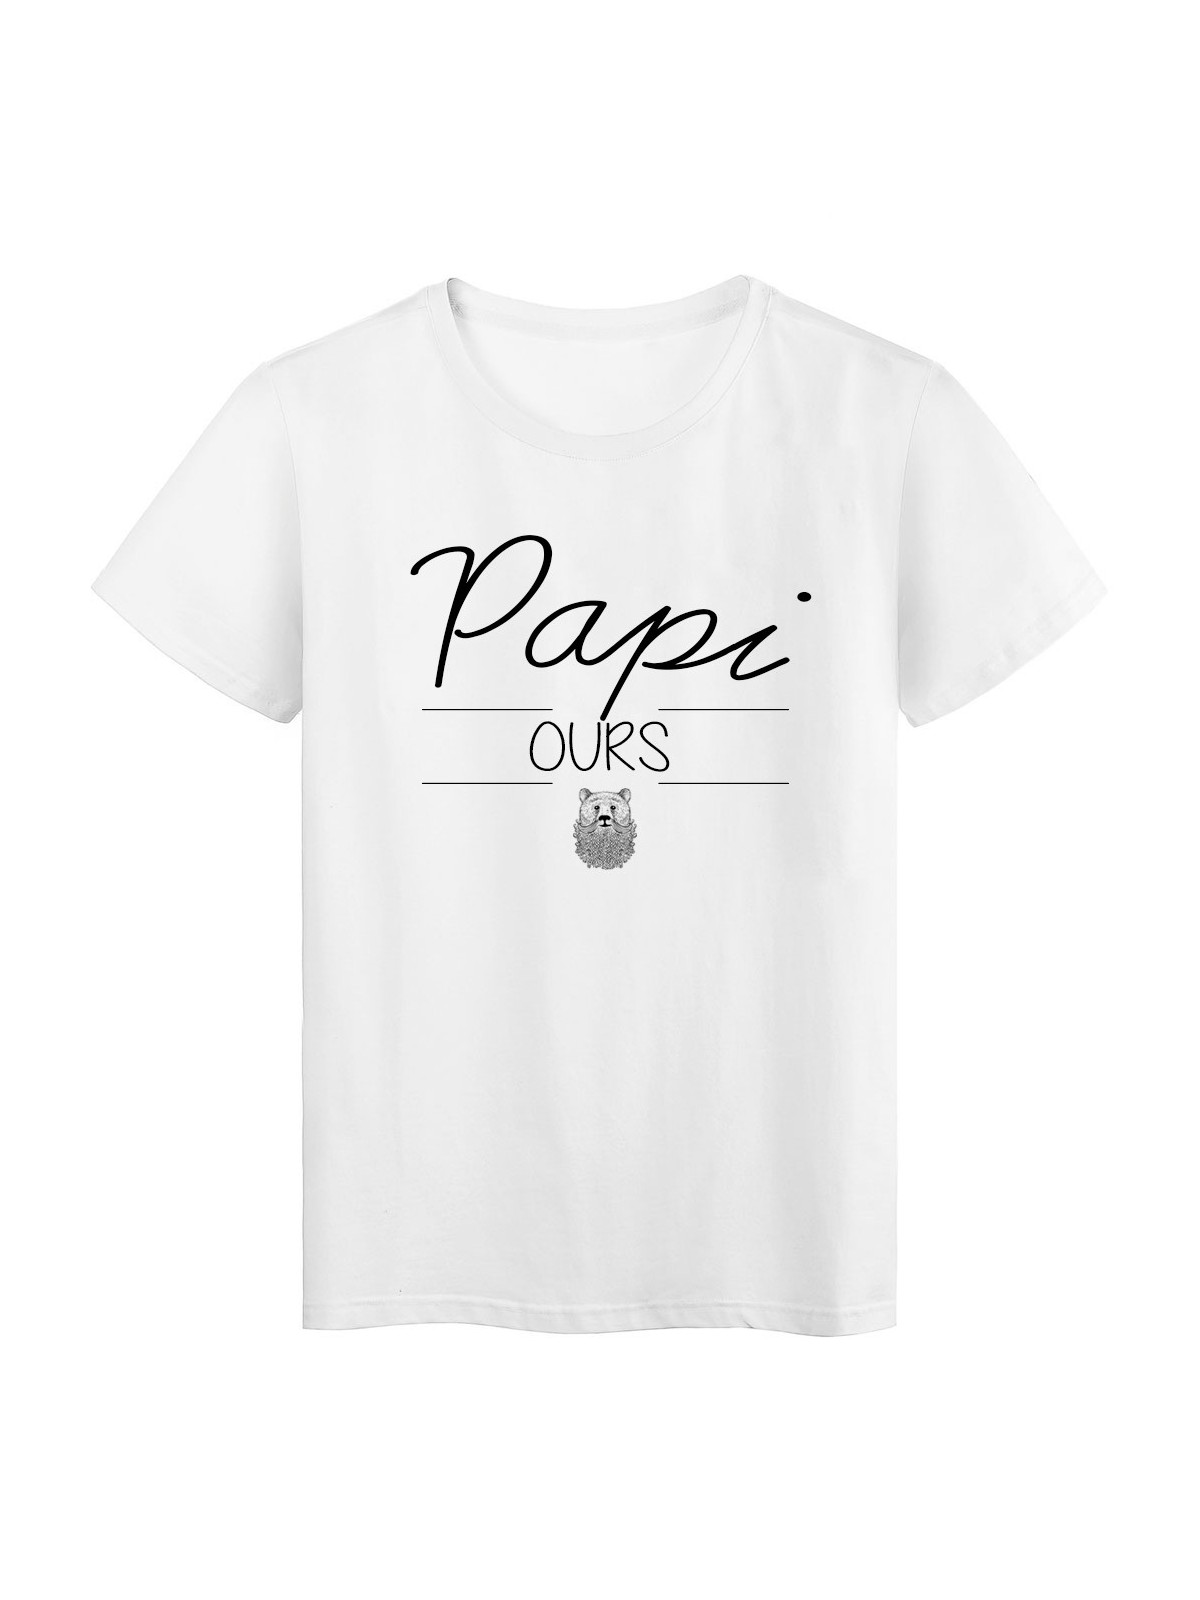 T-Shirt imprimÃ© humour design Papi Ours rÃ©f 2194